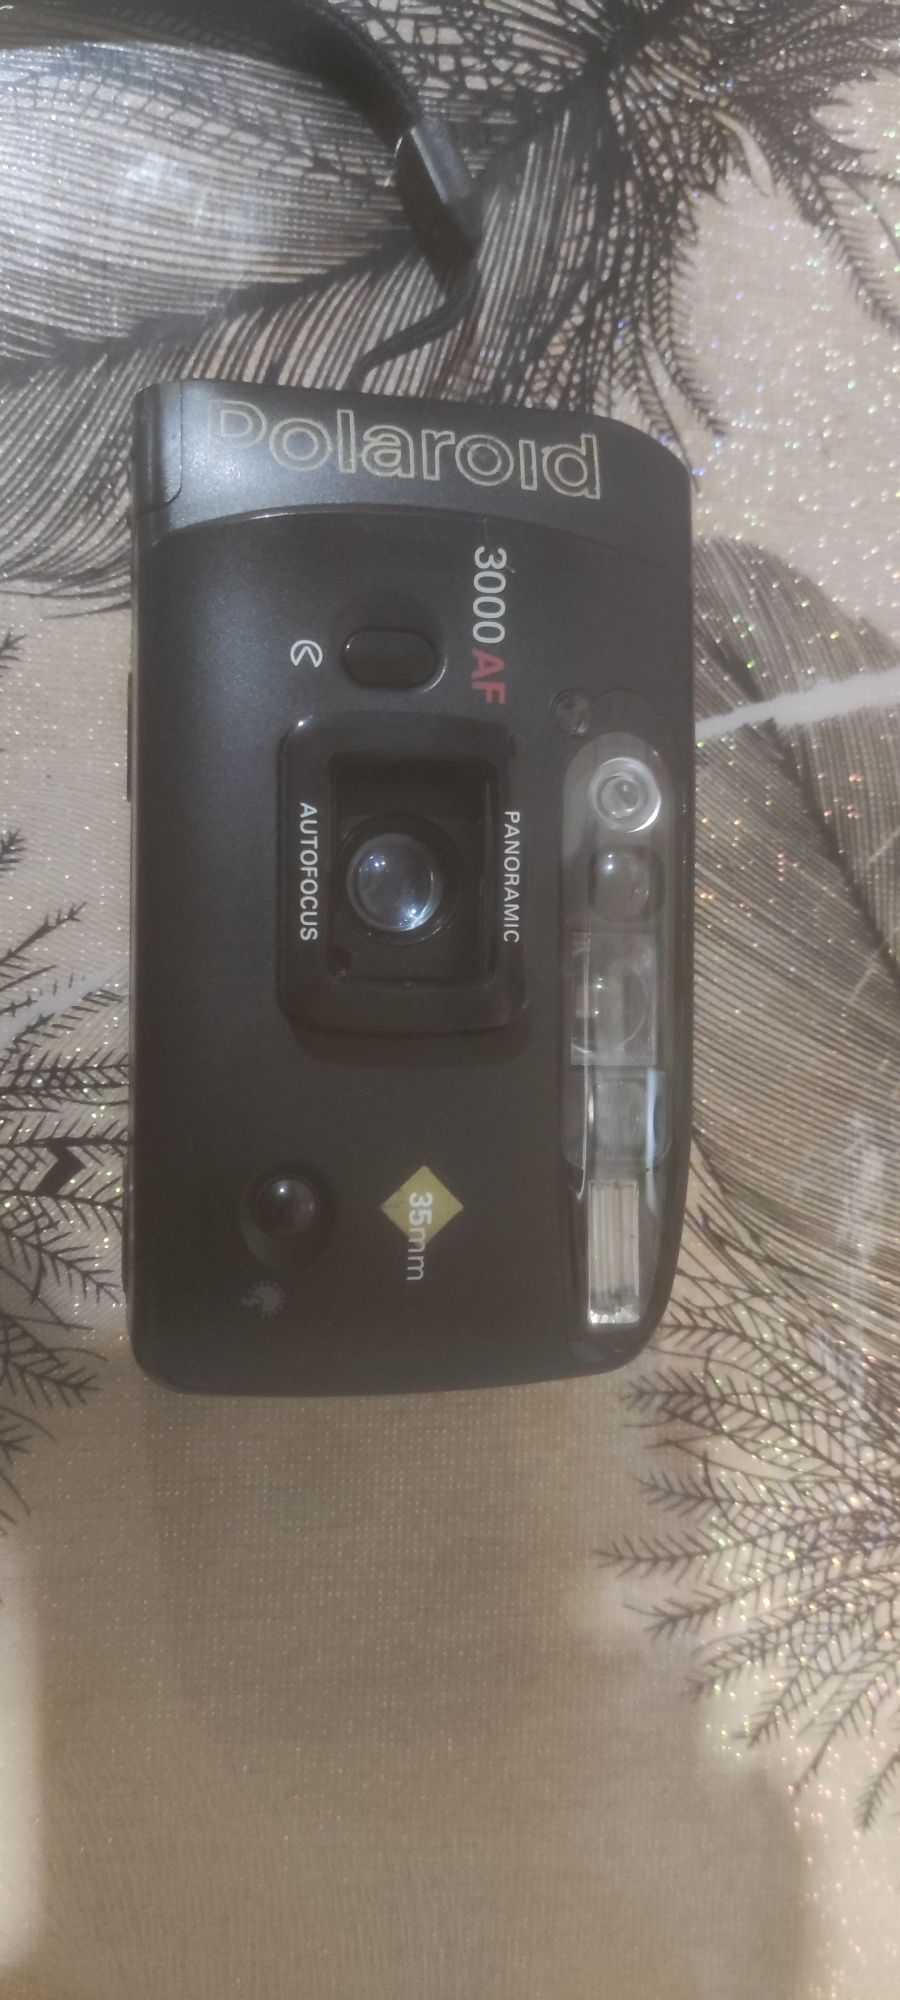 polaroid фотоаппарат